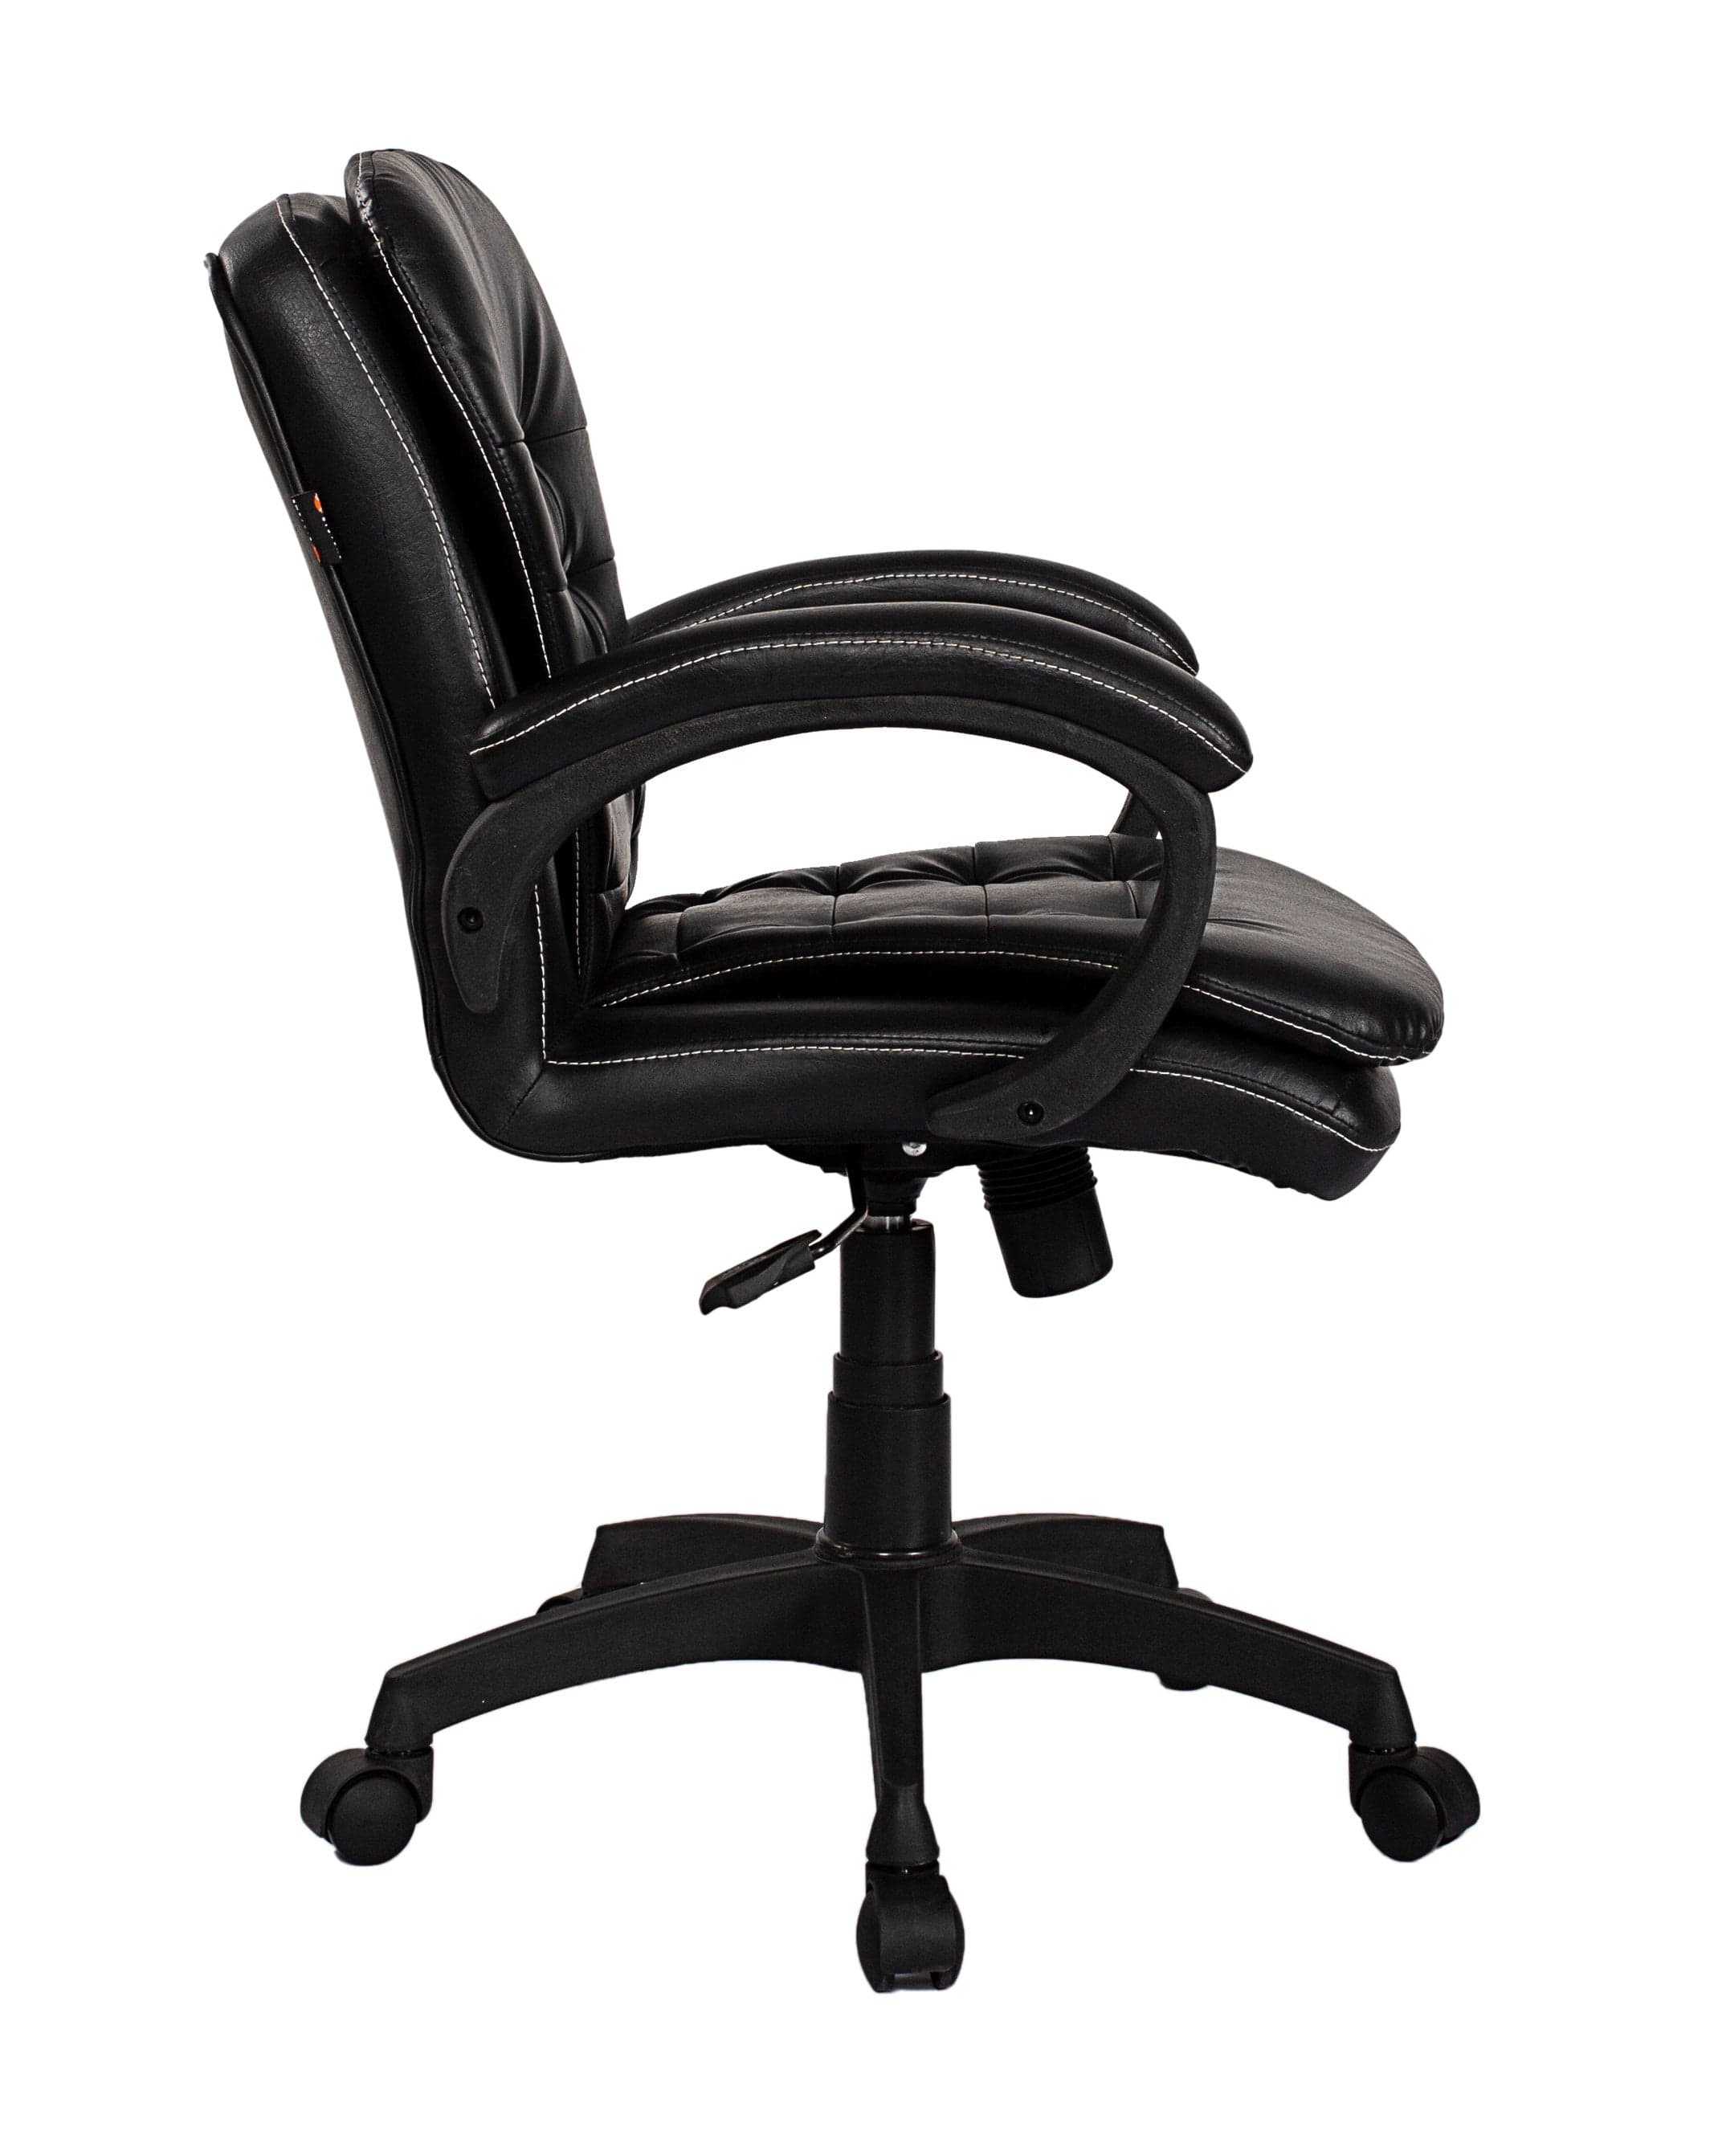 Adiko Stylish Low back Workstation Chair